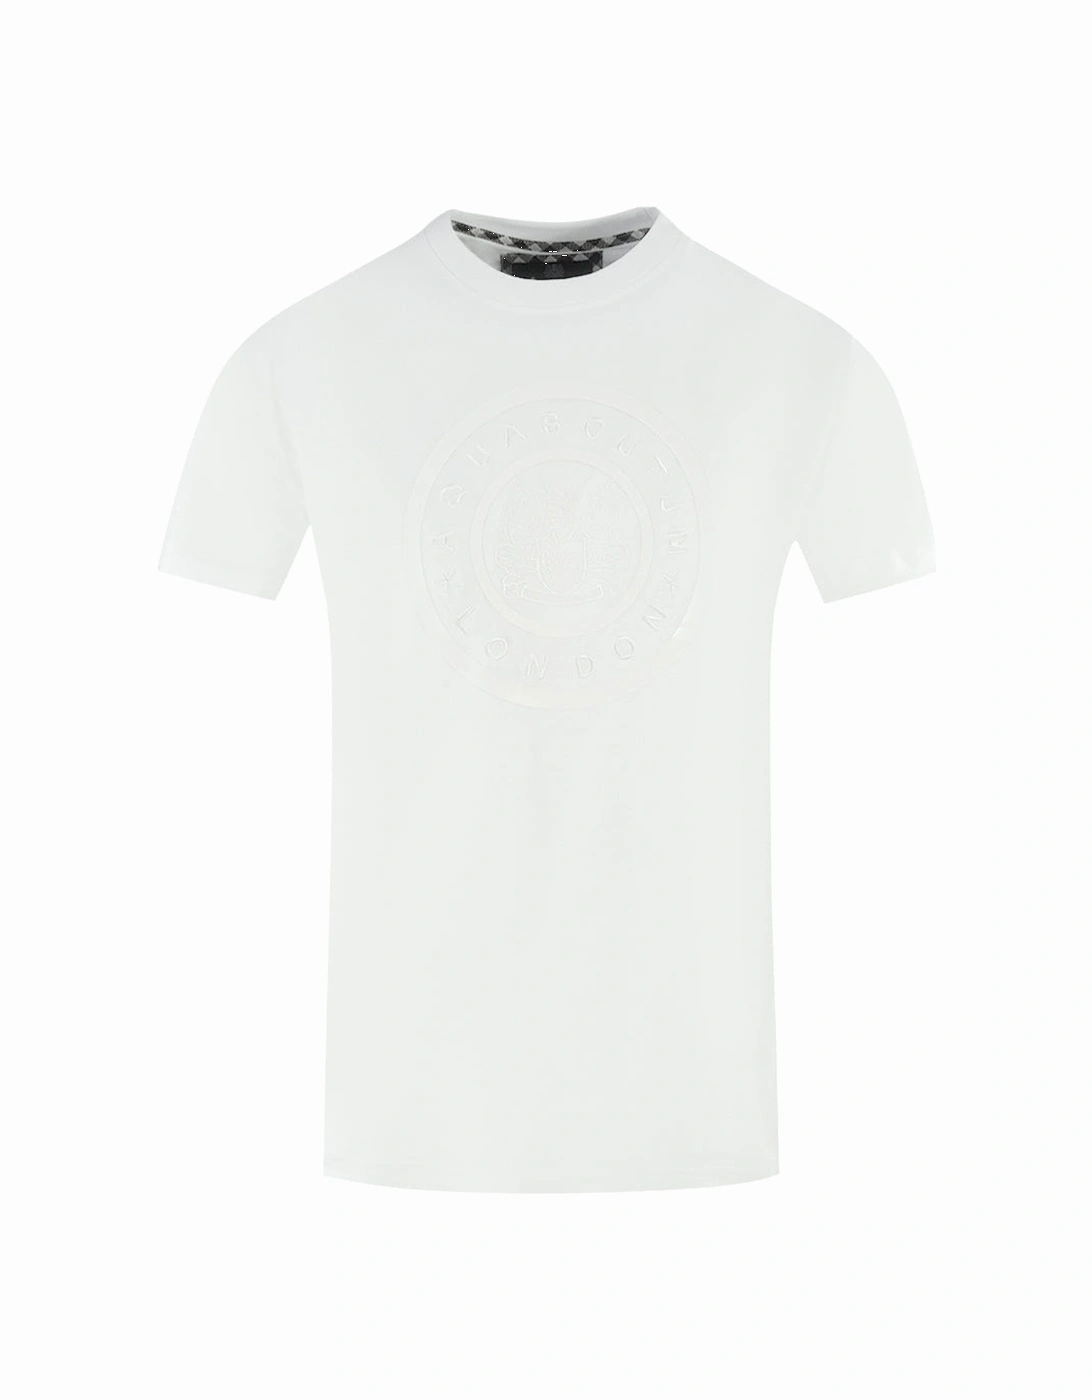 London Circle Logo White T-Shirt, 3 of 2